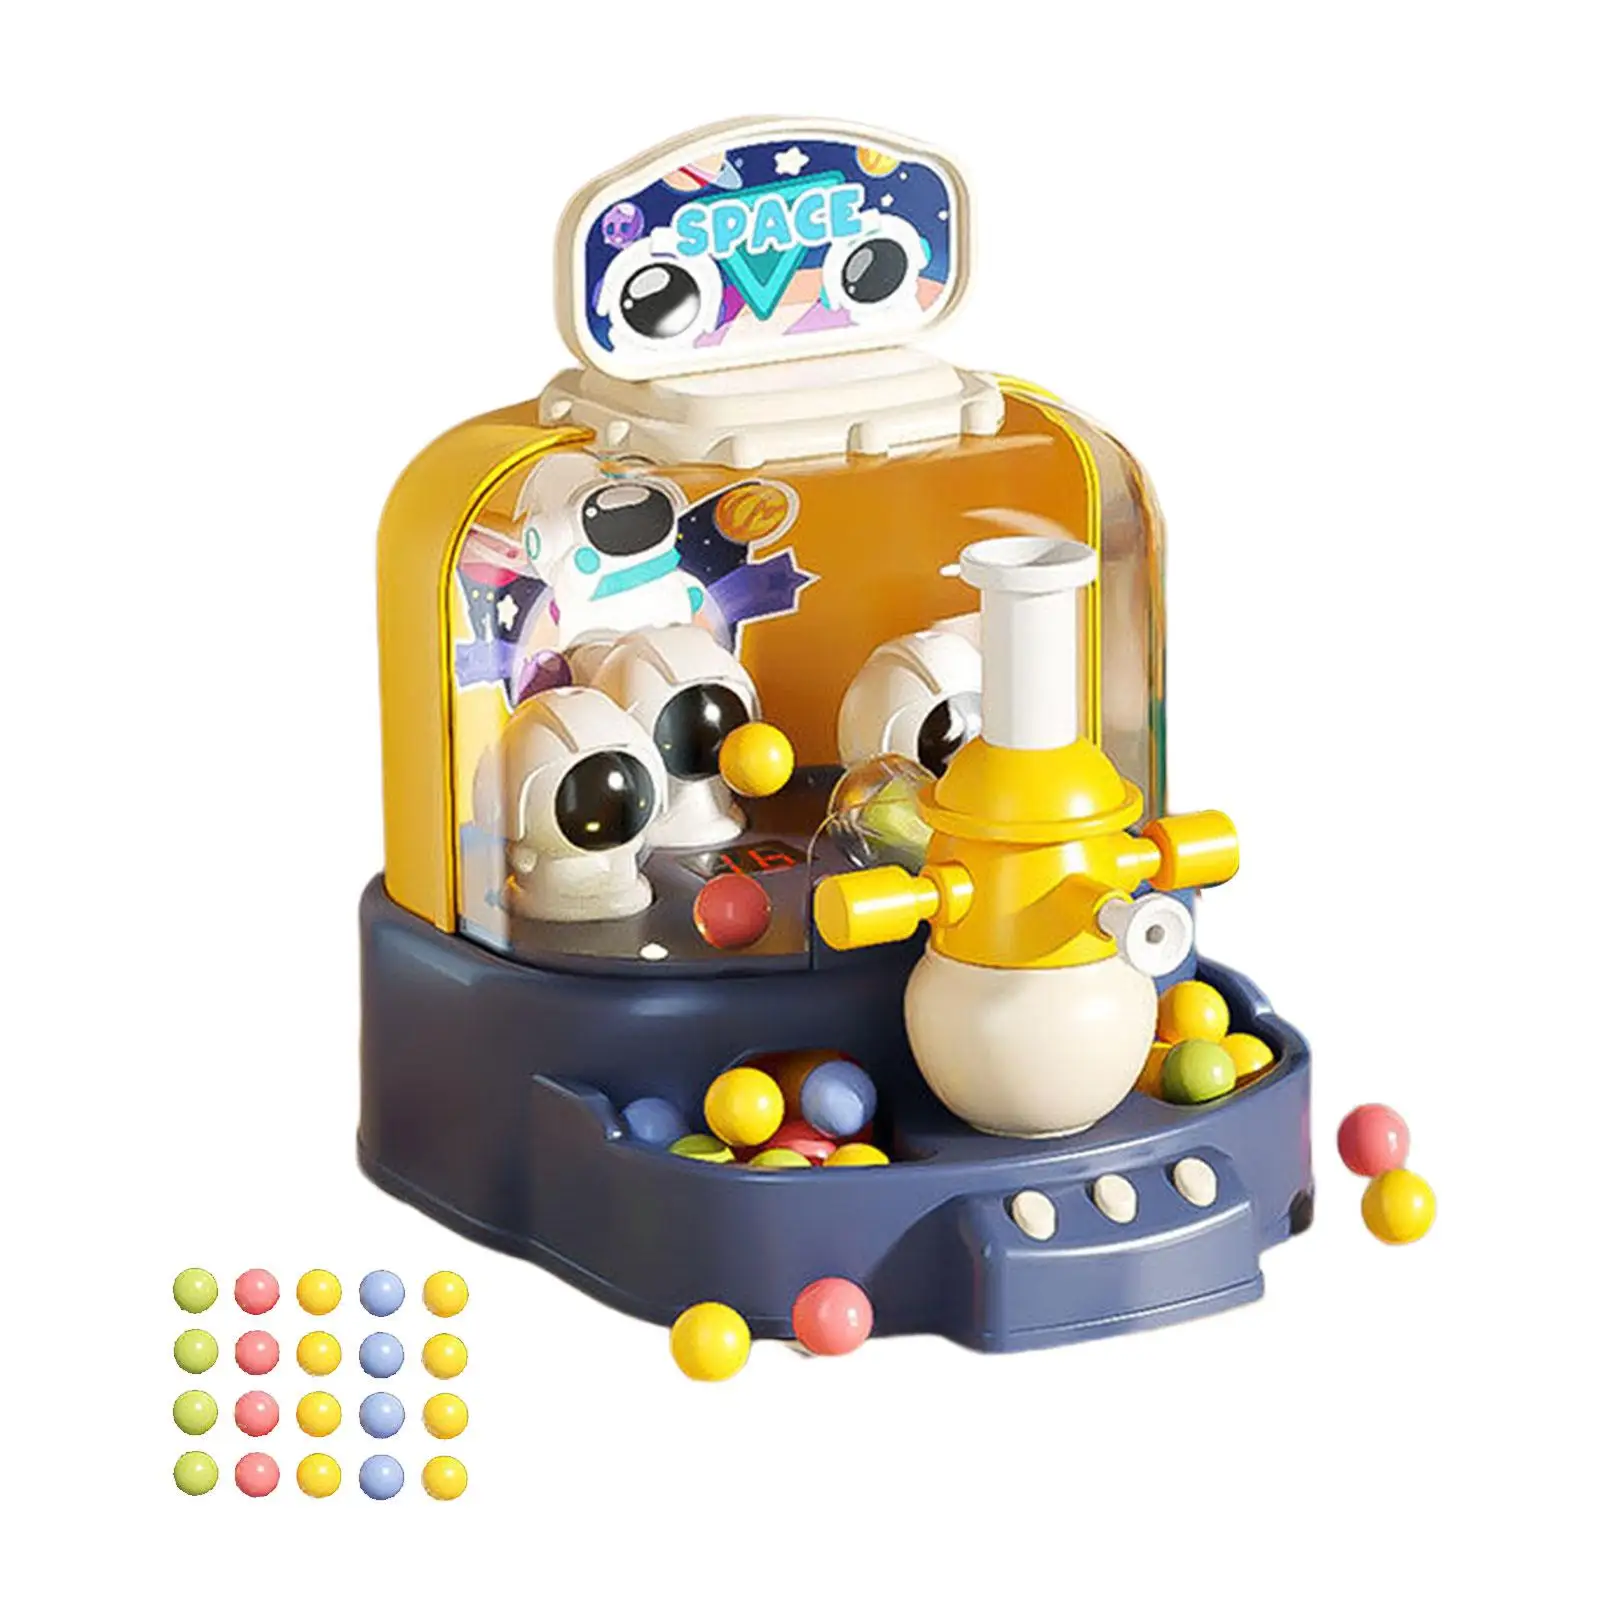 Multifunctional Scoring Target Toy Target Launch Game Machine for Game